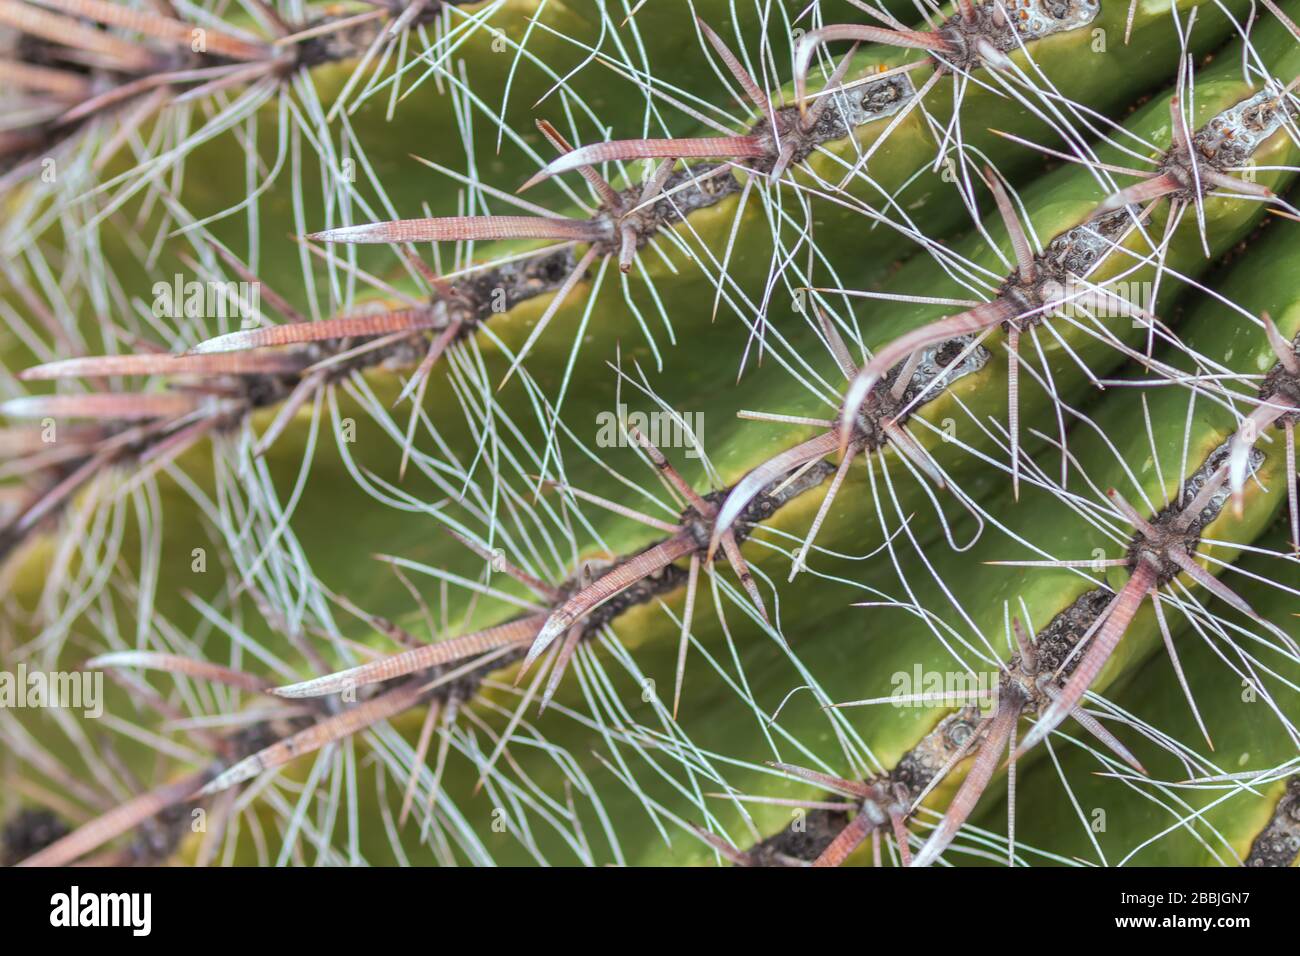 Nahaufnahme der Wirbelsäulen eines Barrel Cactus Ferocactus wislizeni. Stockfoto